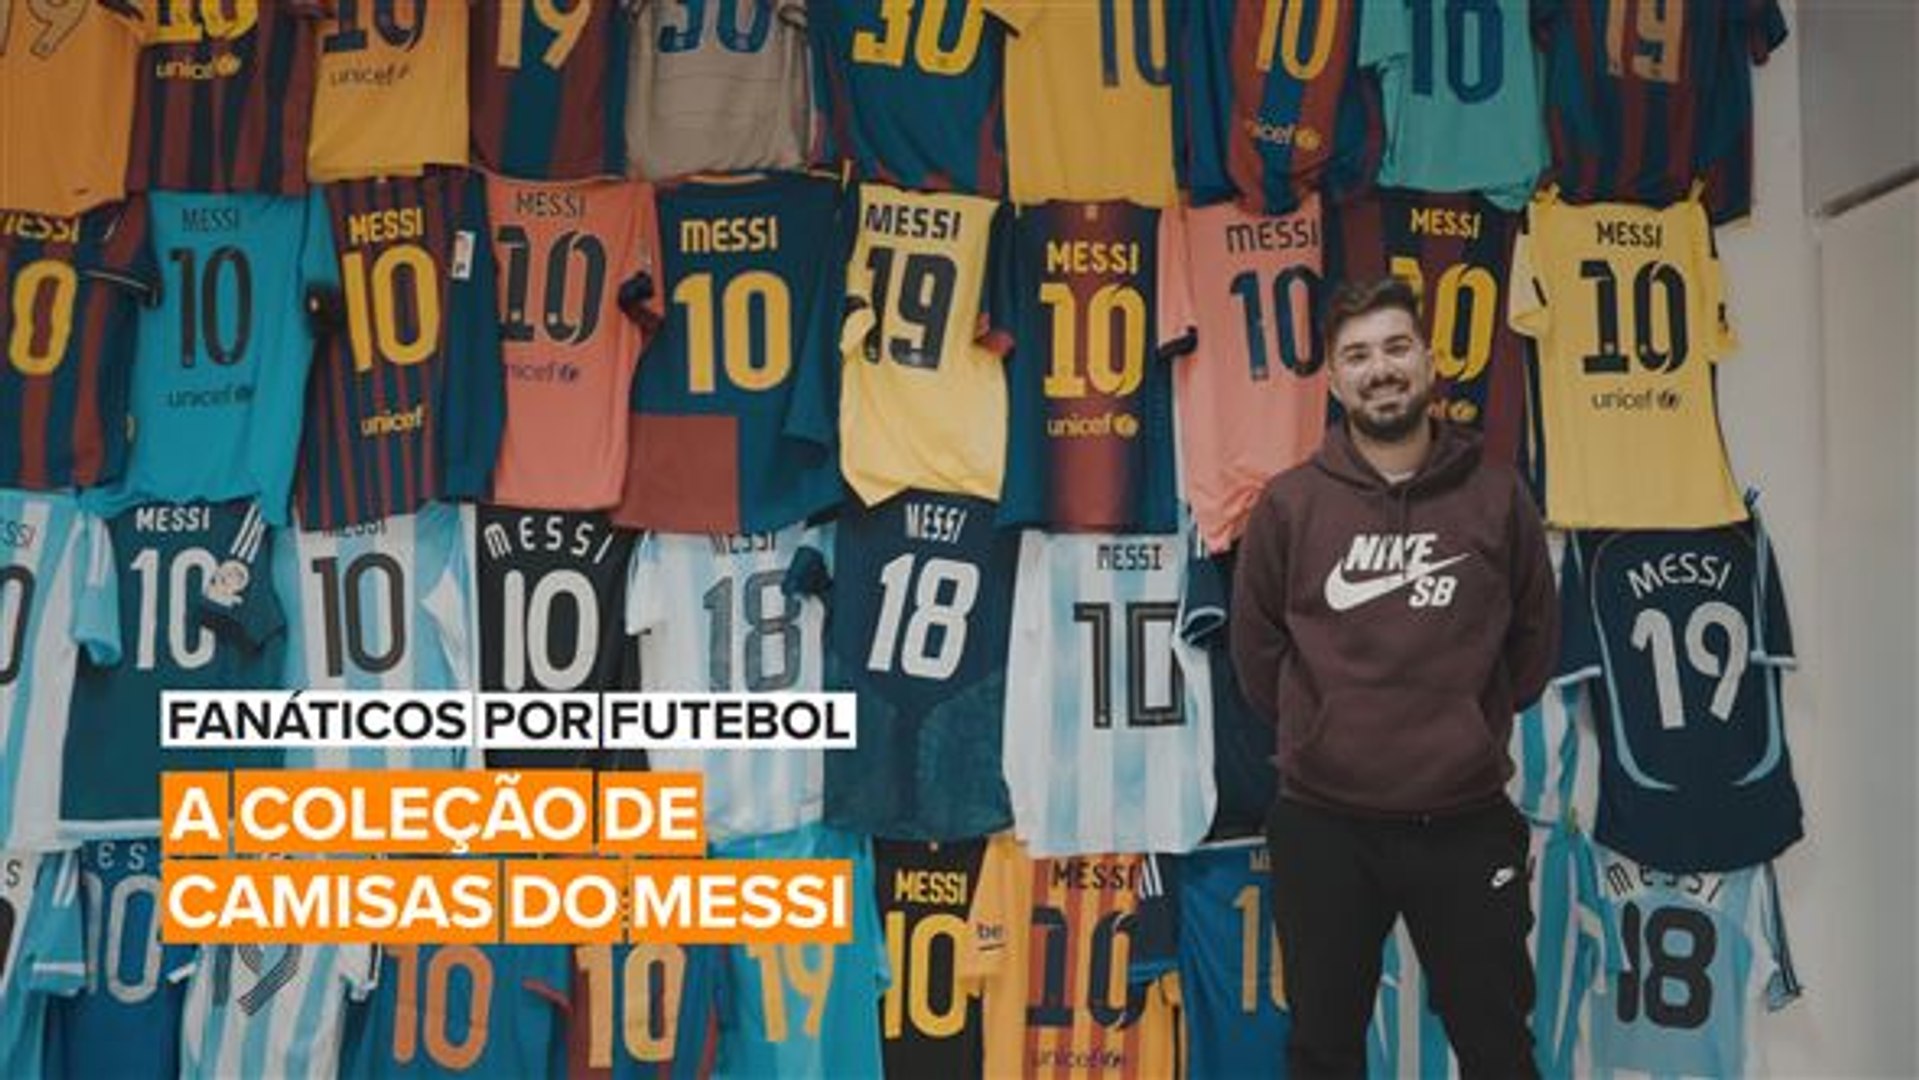 Fanáticos por Futebol: A coleção gigante de camisas - Vidéo Dailymotion